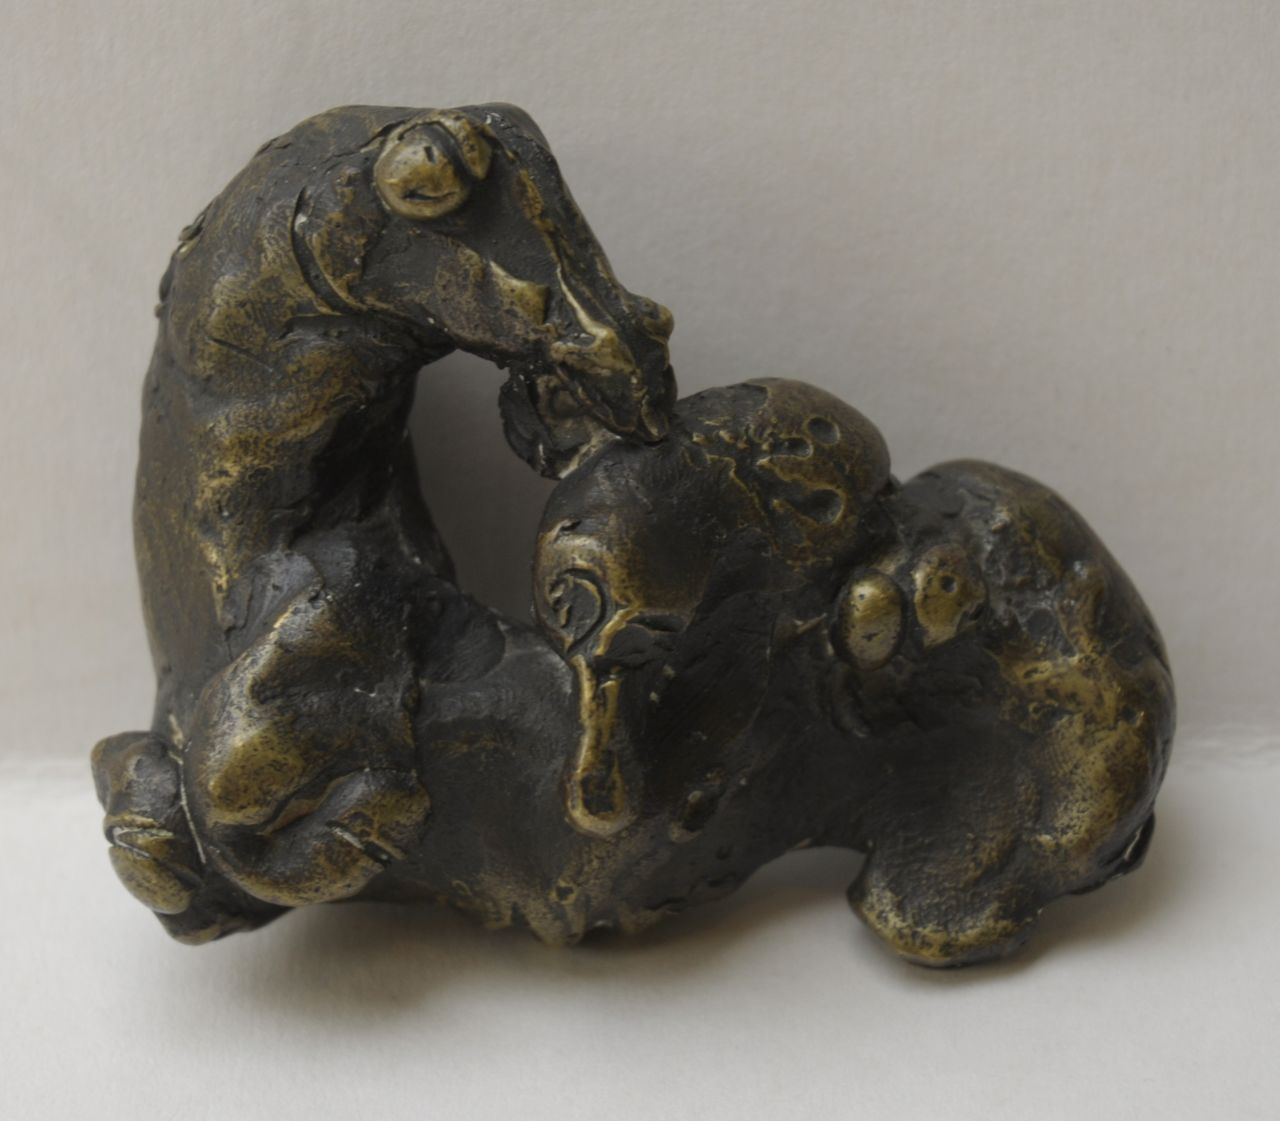 Spronken A.J.E.  | 'Arthur' Jan Elisa Spronken, Paard, torso, brons 6,9 x 8,8 cm, gesigneerd met initialen op hals